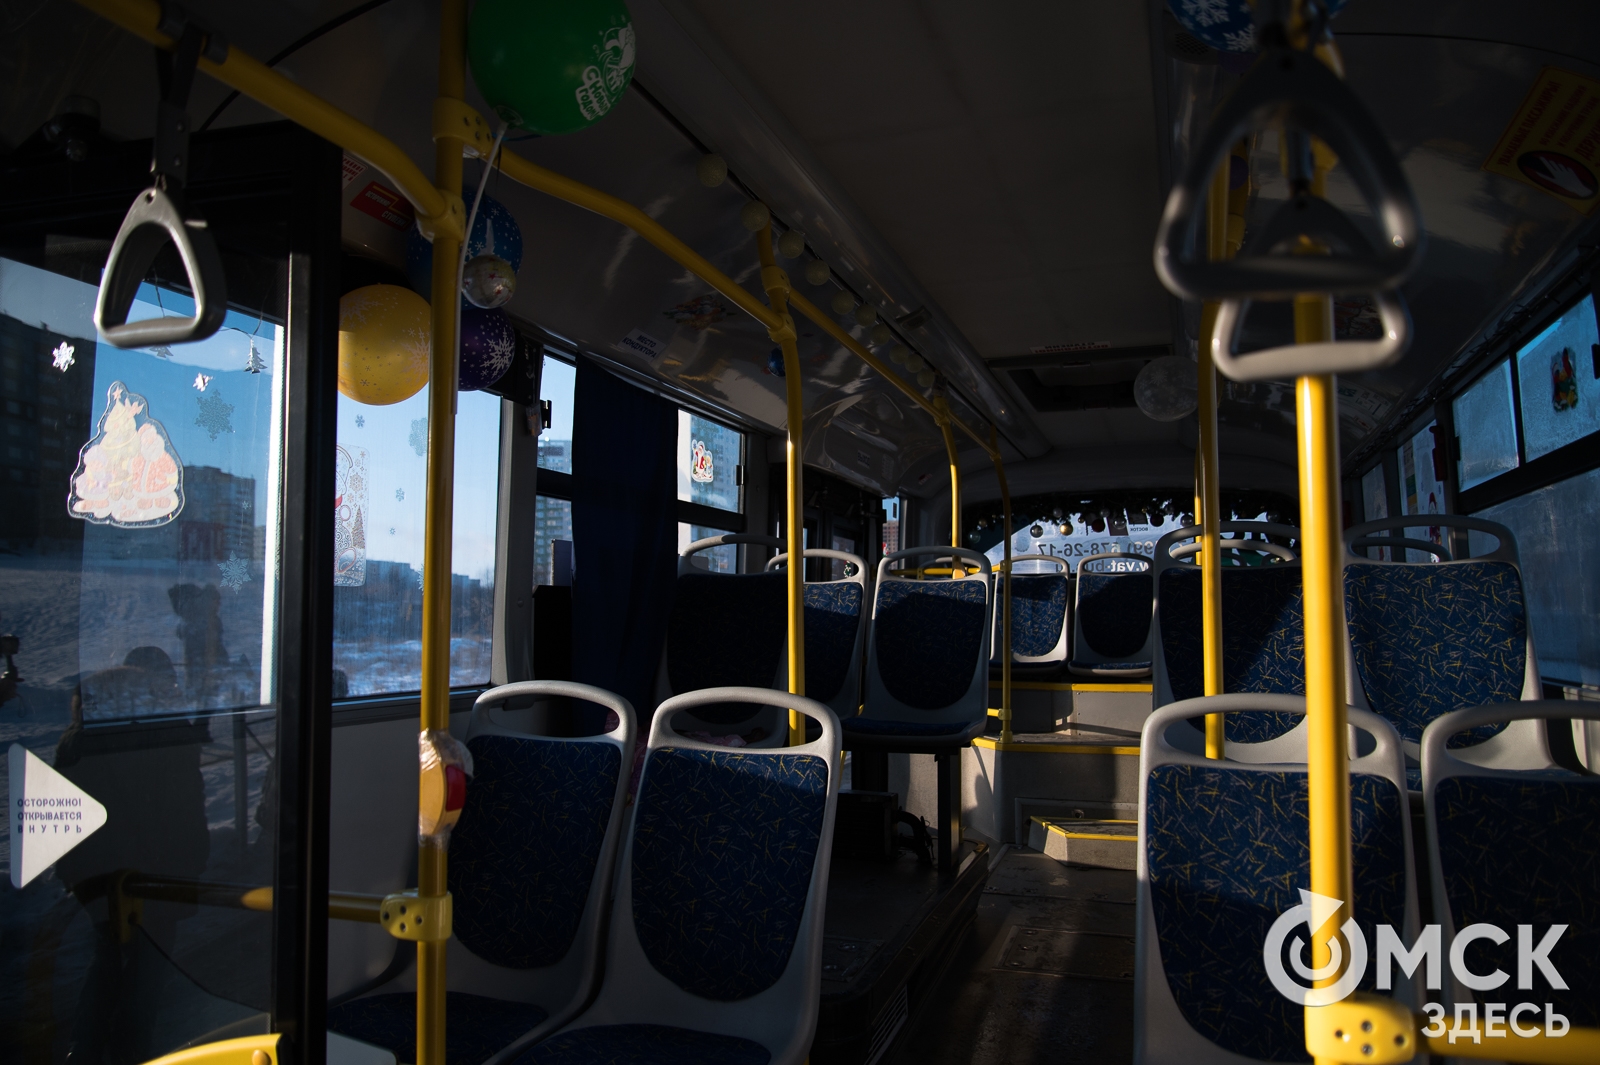 Ещё два автобусных маршрута начнут работать до полуночи с зимы